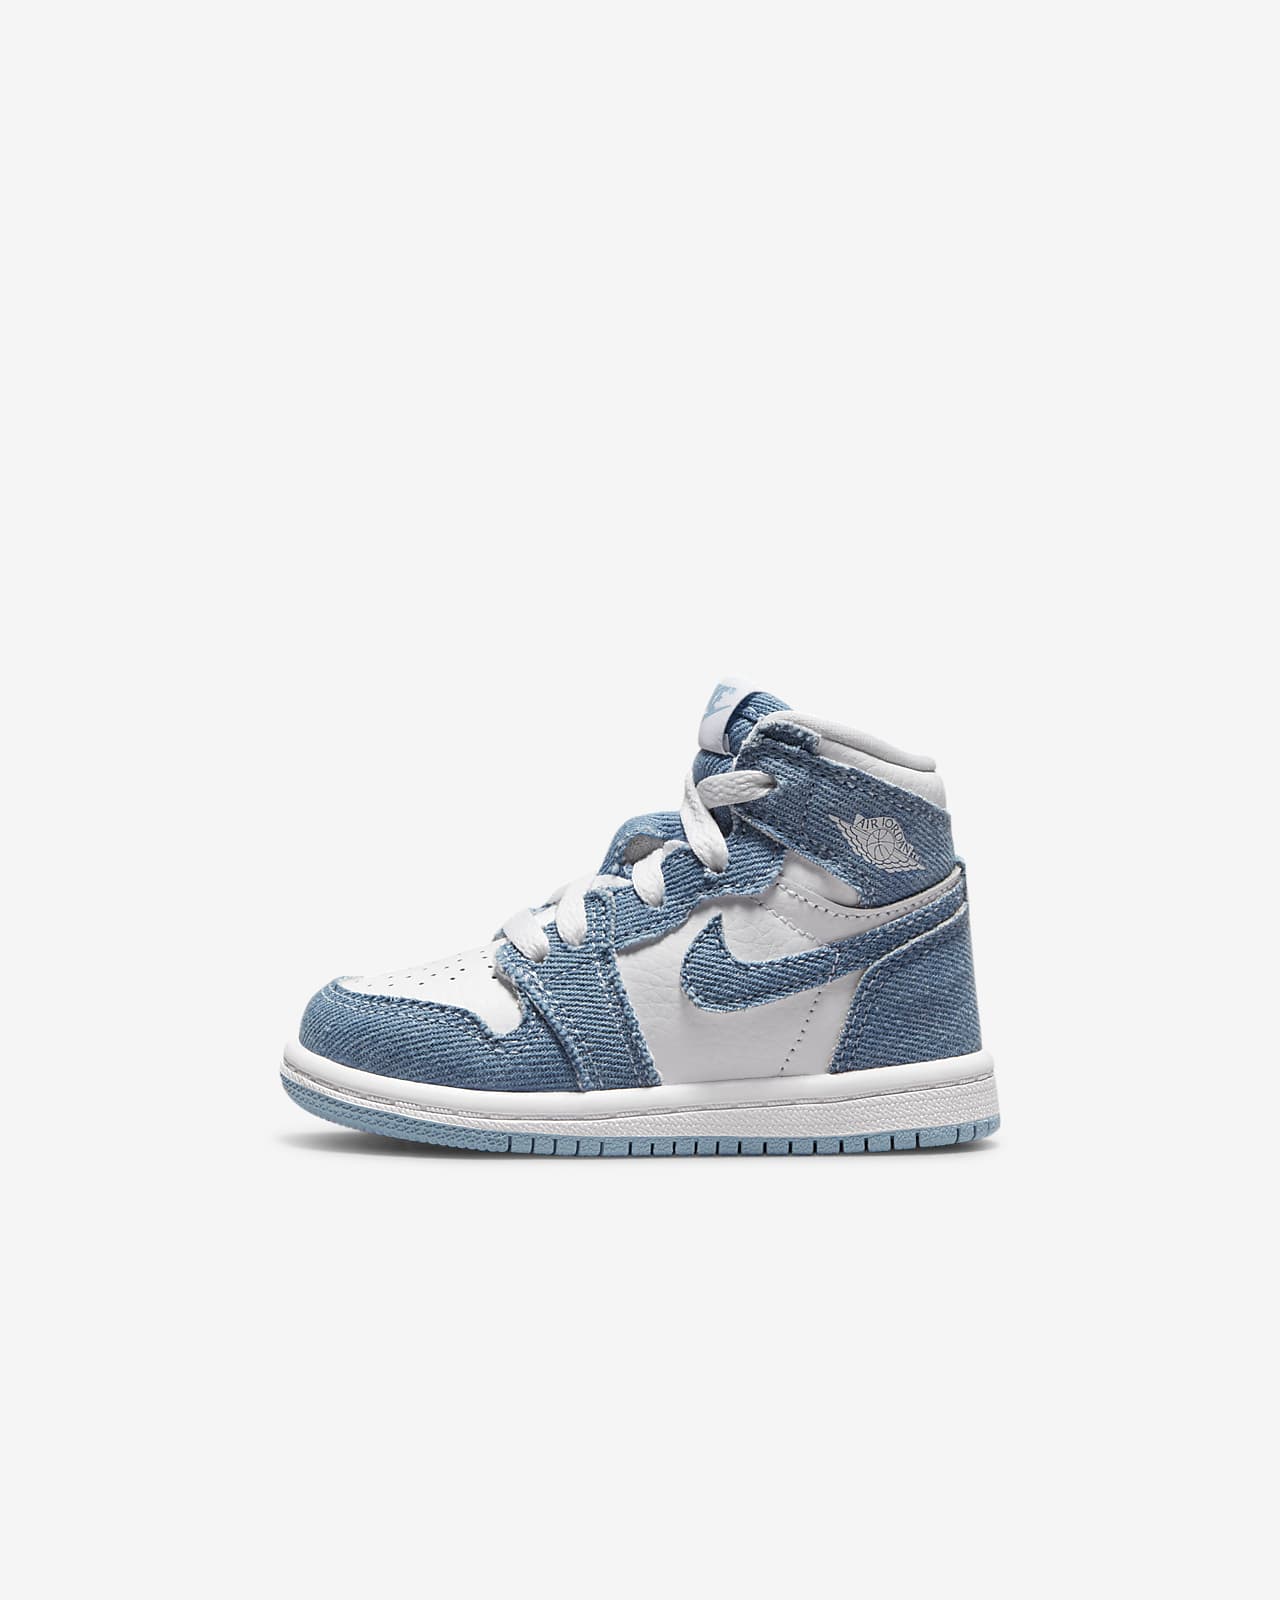 Jordan 1 OG-sko babyer/småbørn. Nike DK